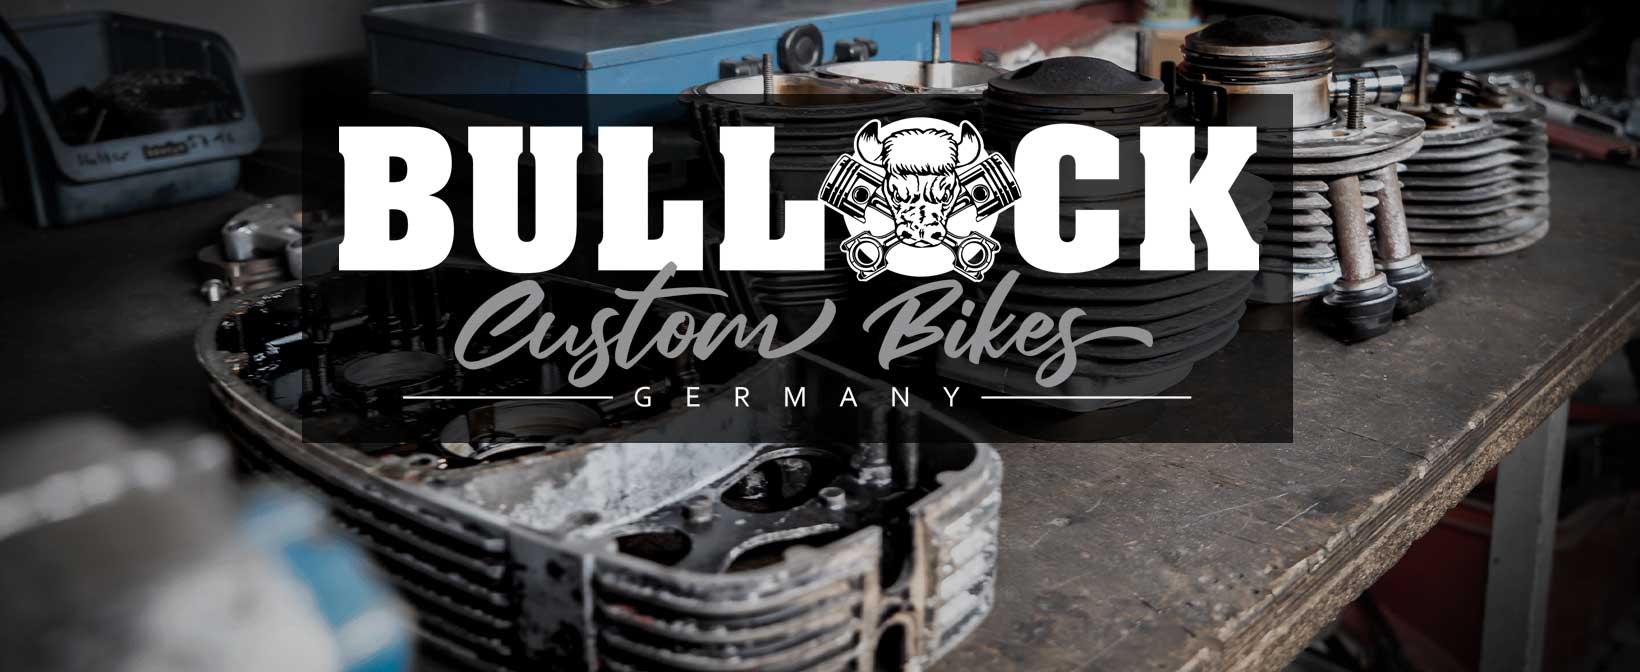 Bullock-Custom-Bikes-Wartung